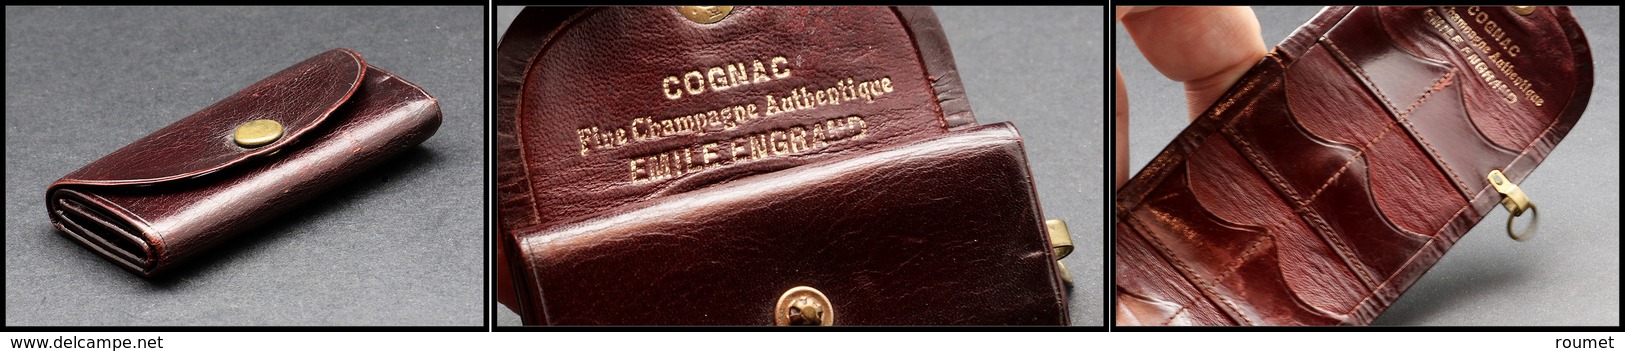 Etui En Cuir Avec Boucle, Marqué "Cognac Fine Champagne Emile Engrand", 8 Comp., H.62xl.30mm. - TB - Cajas Para Sellos